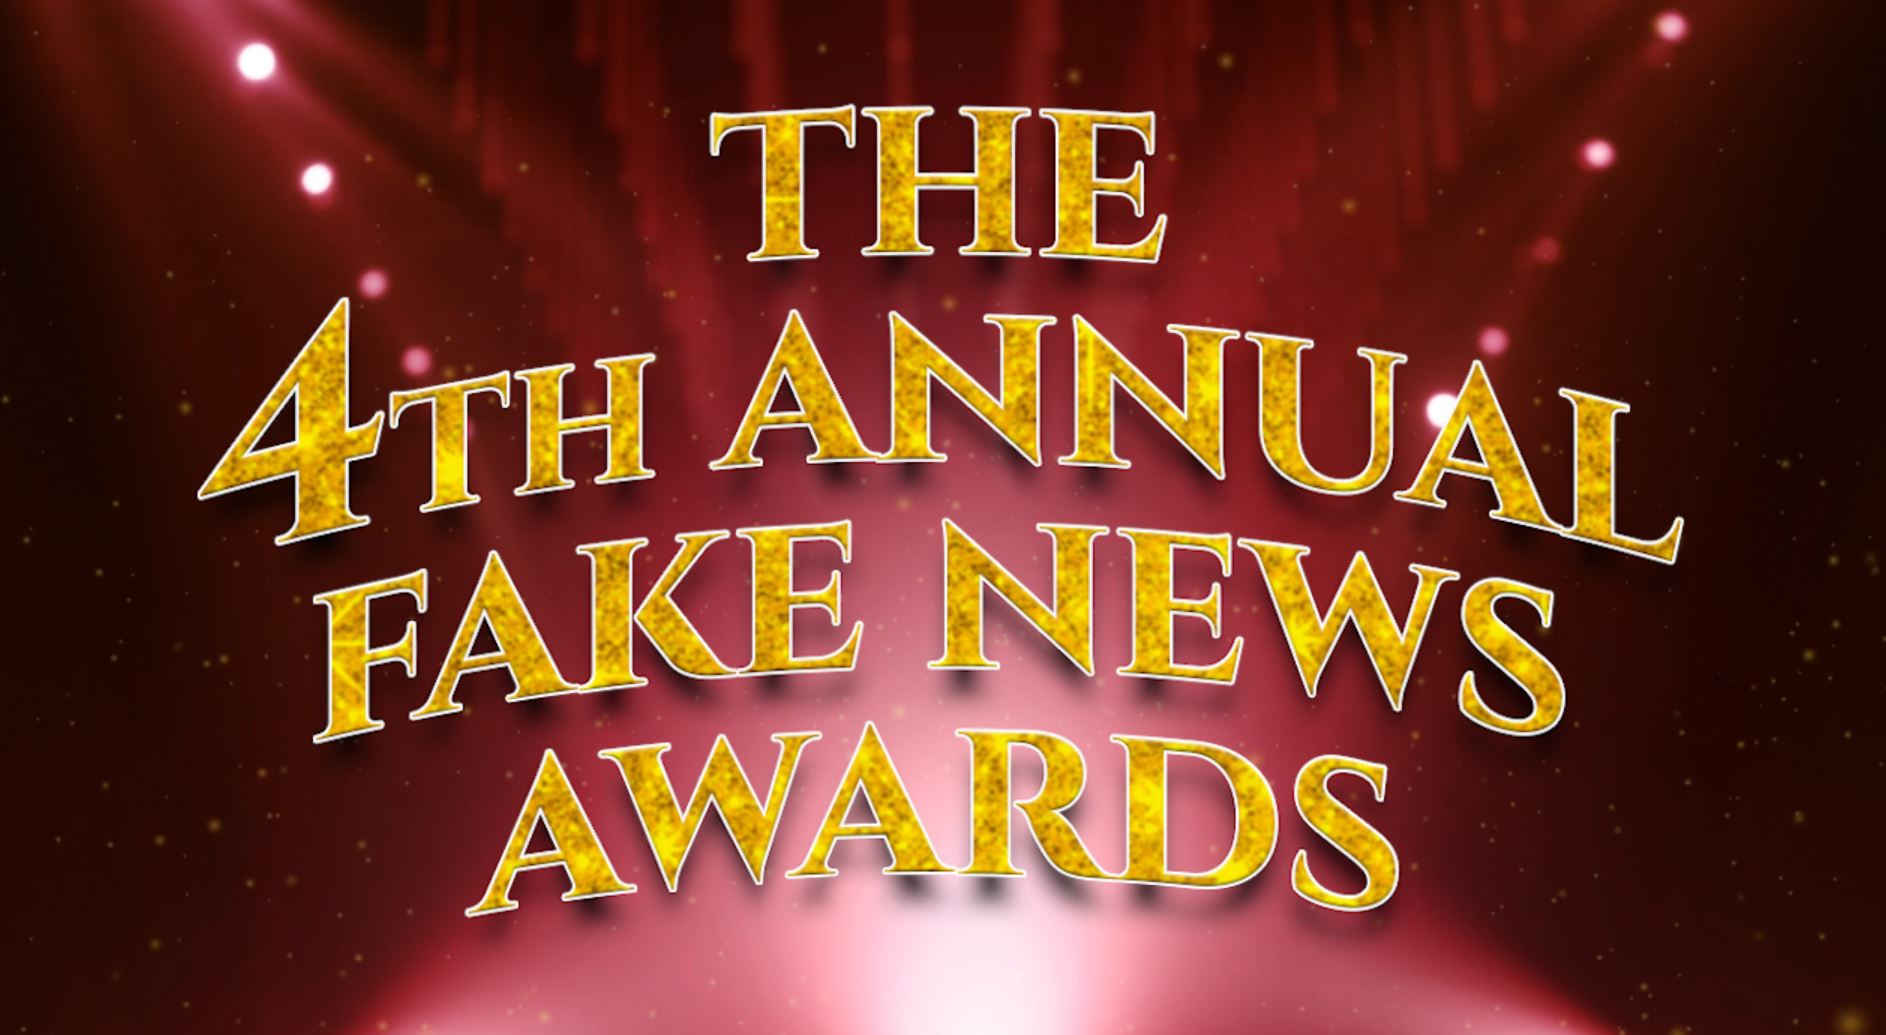 fake-news-awards-1.jpg